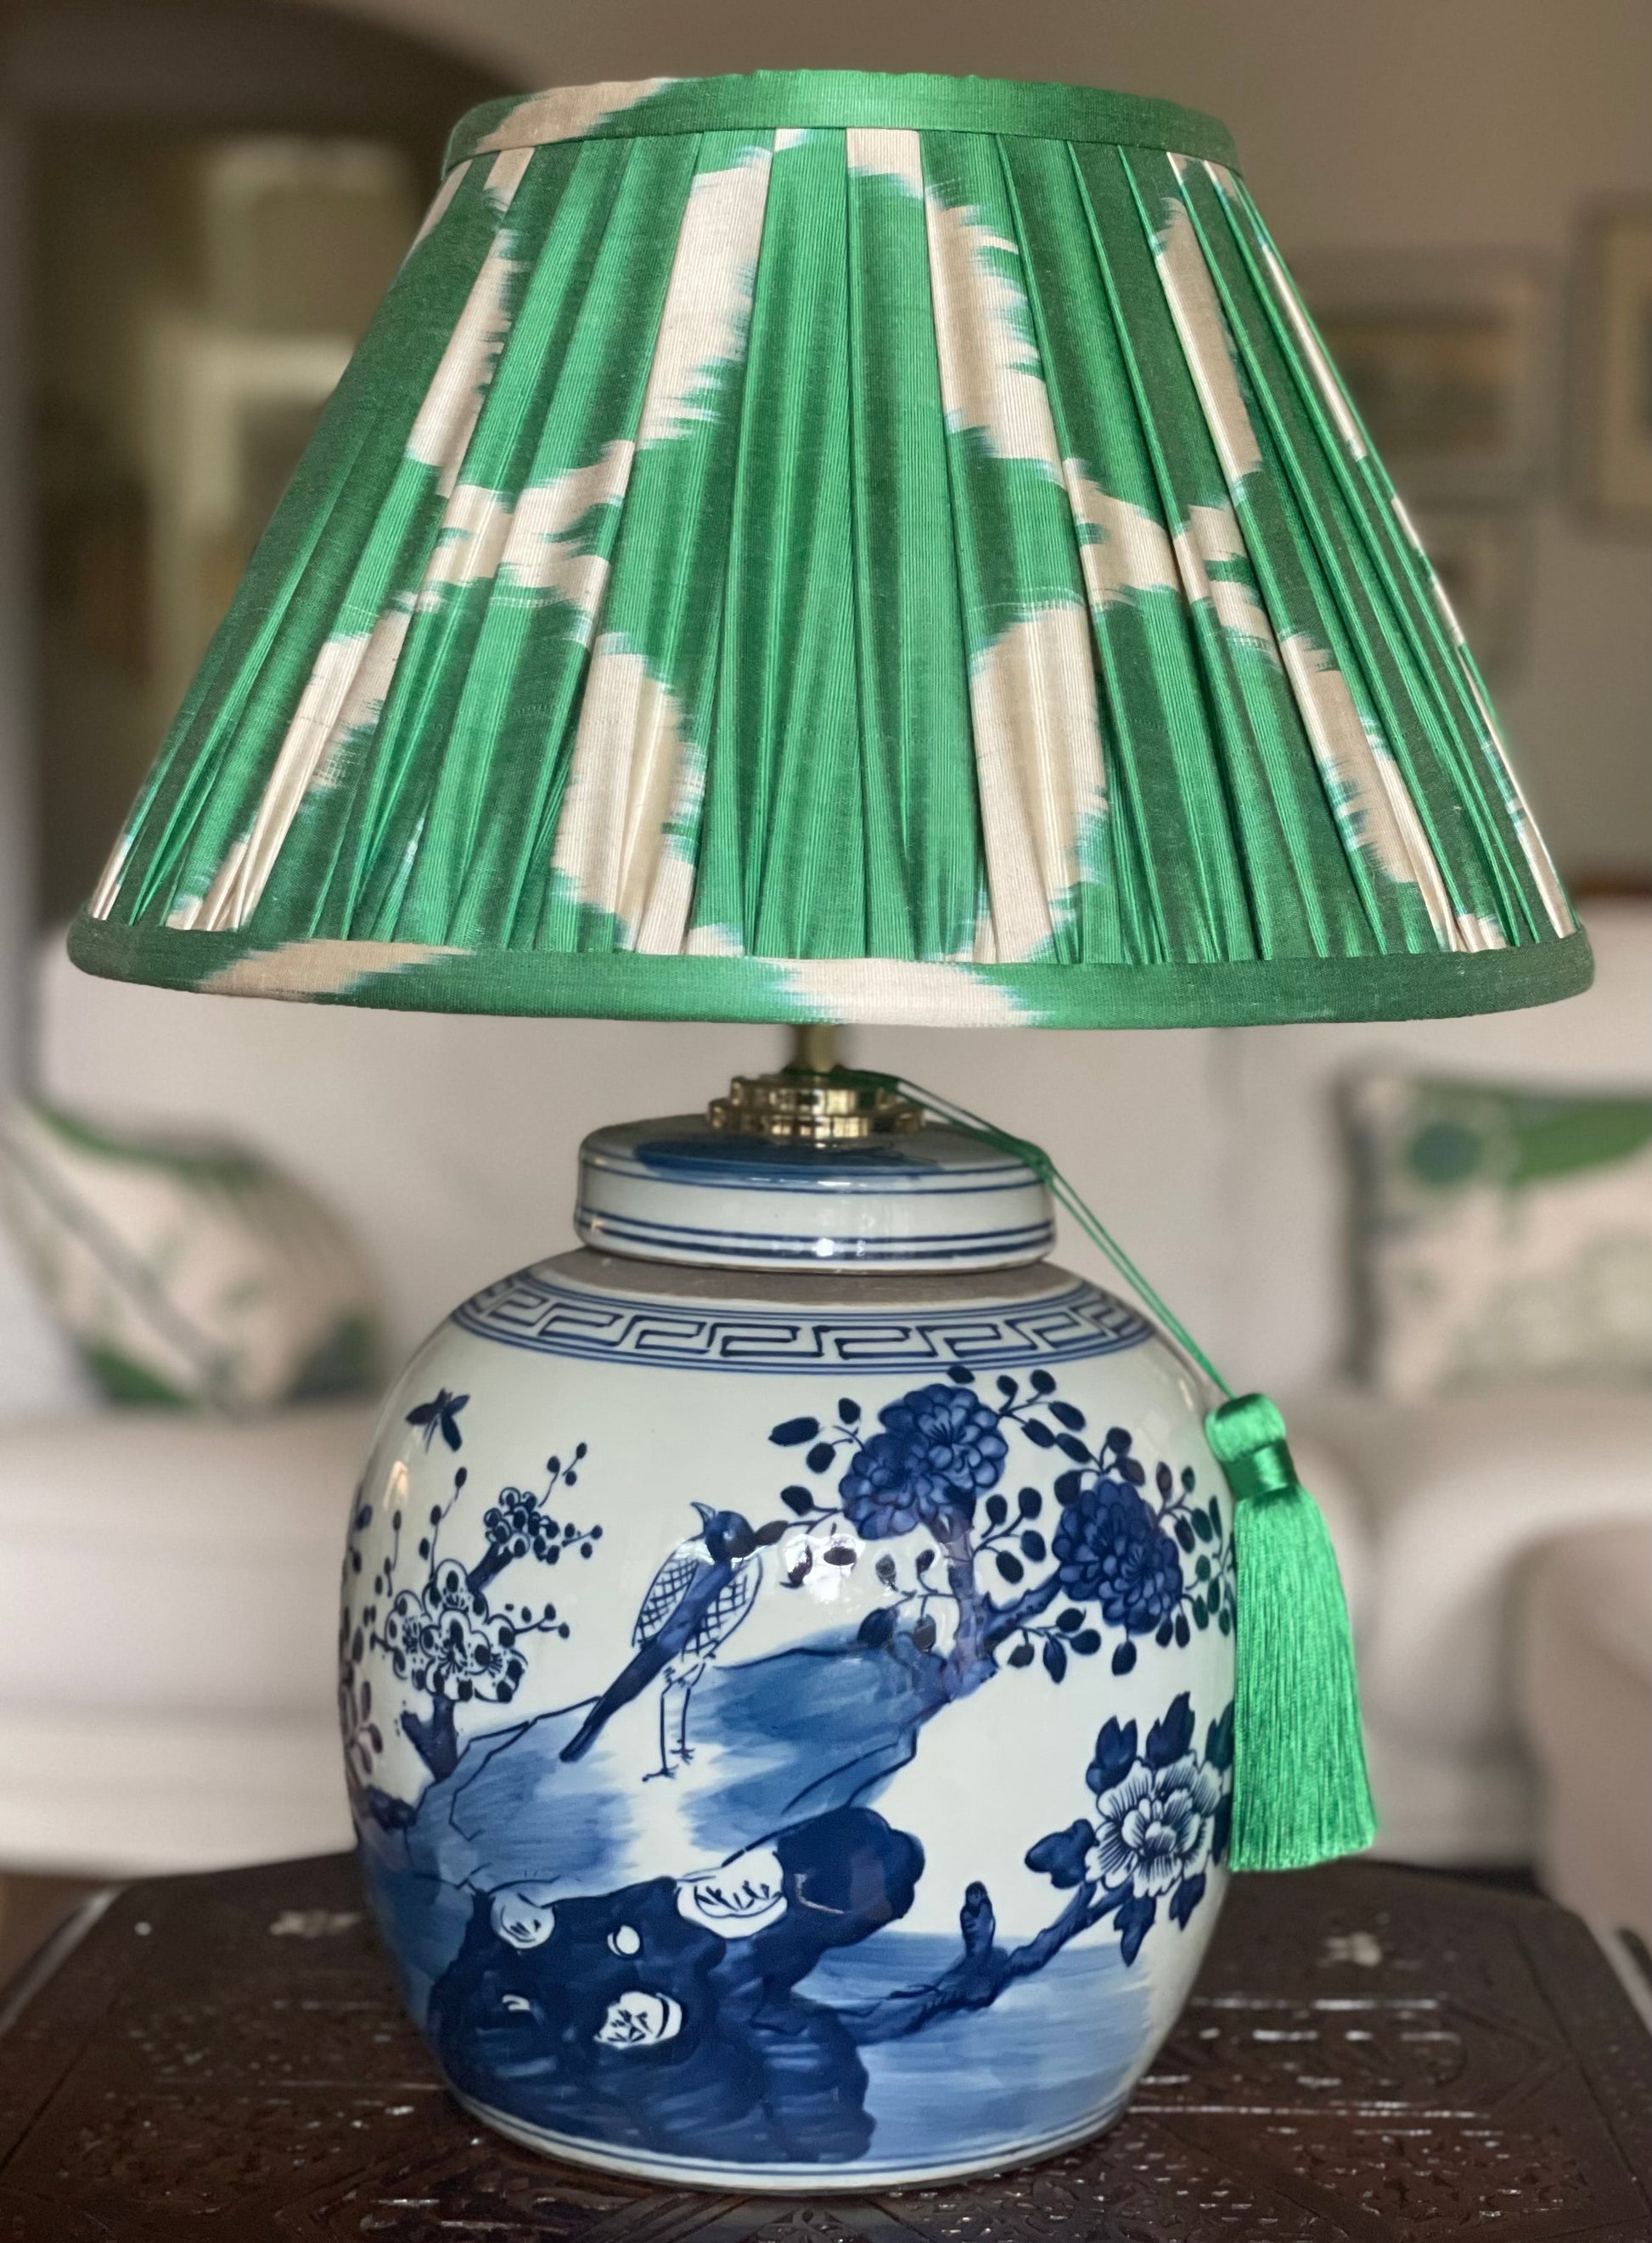 Shamrock Silk IKat Lamp Shade with Bird ginger jar lamp base